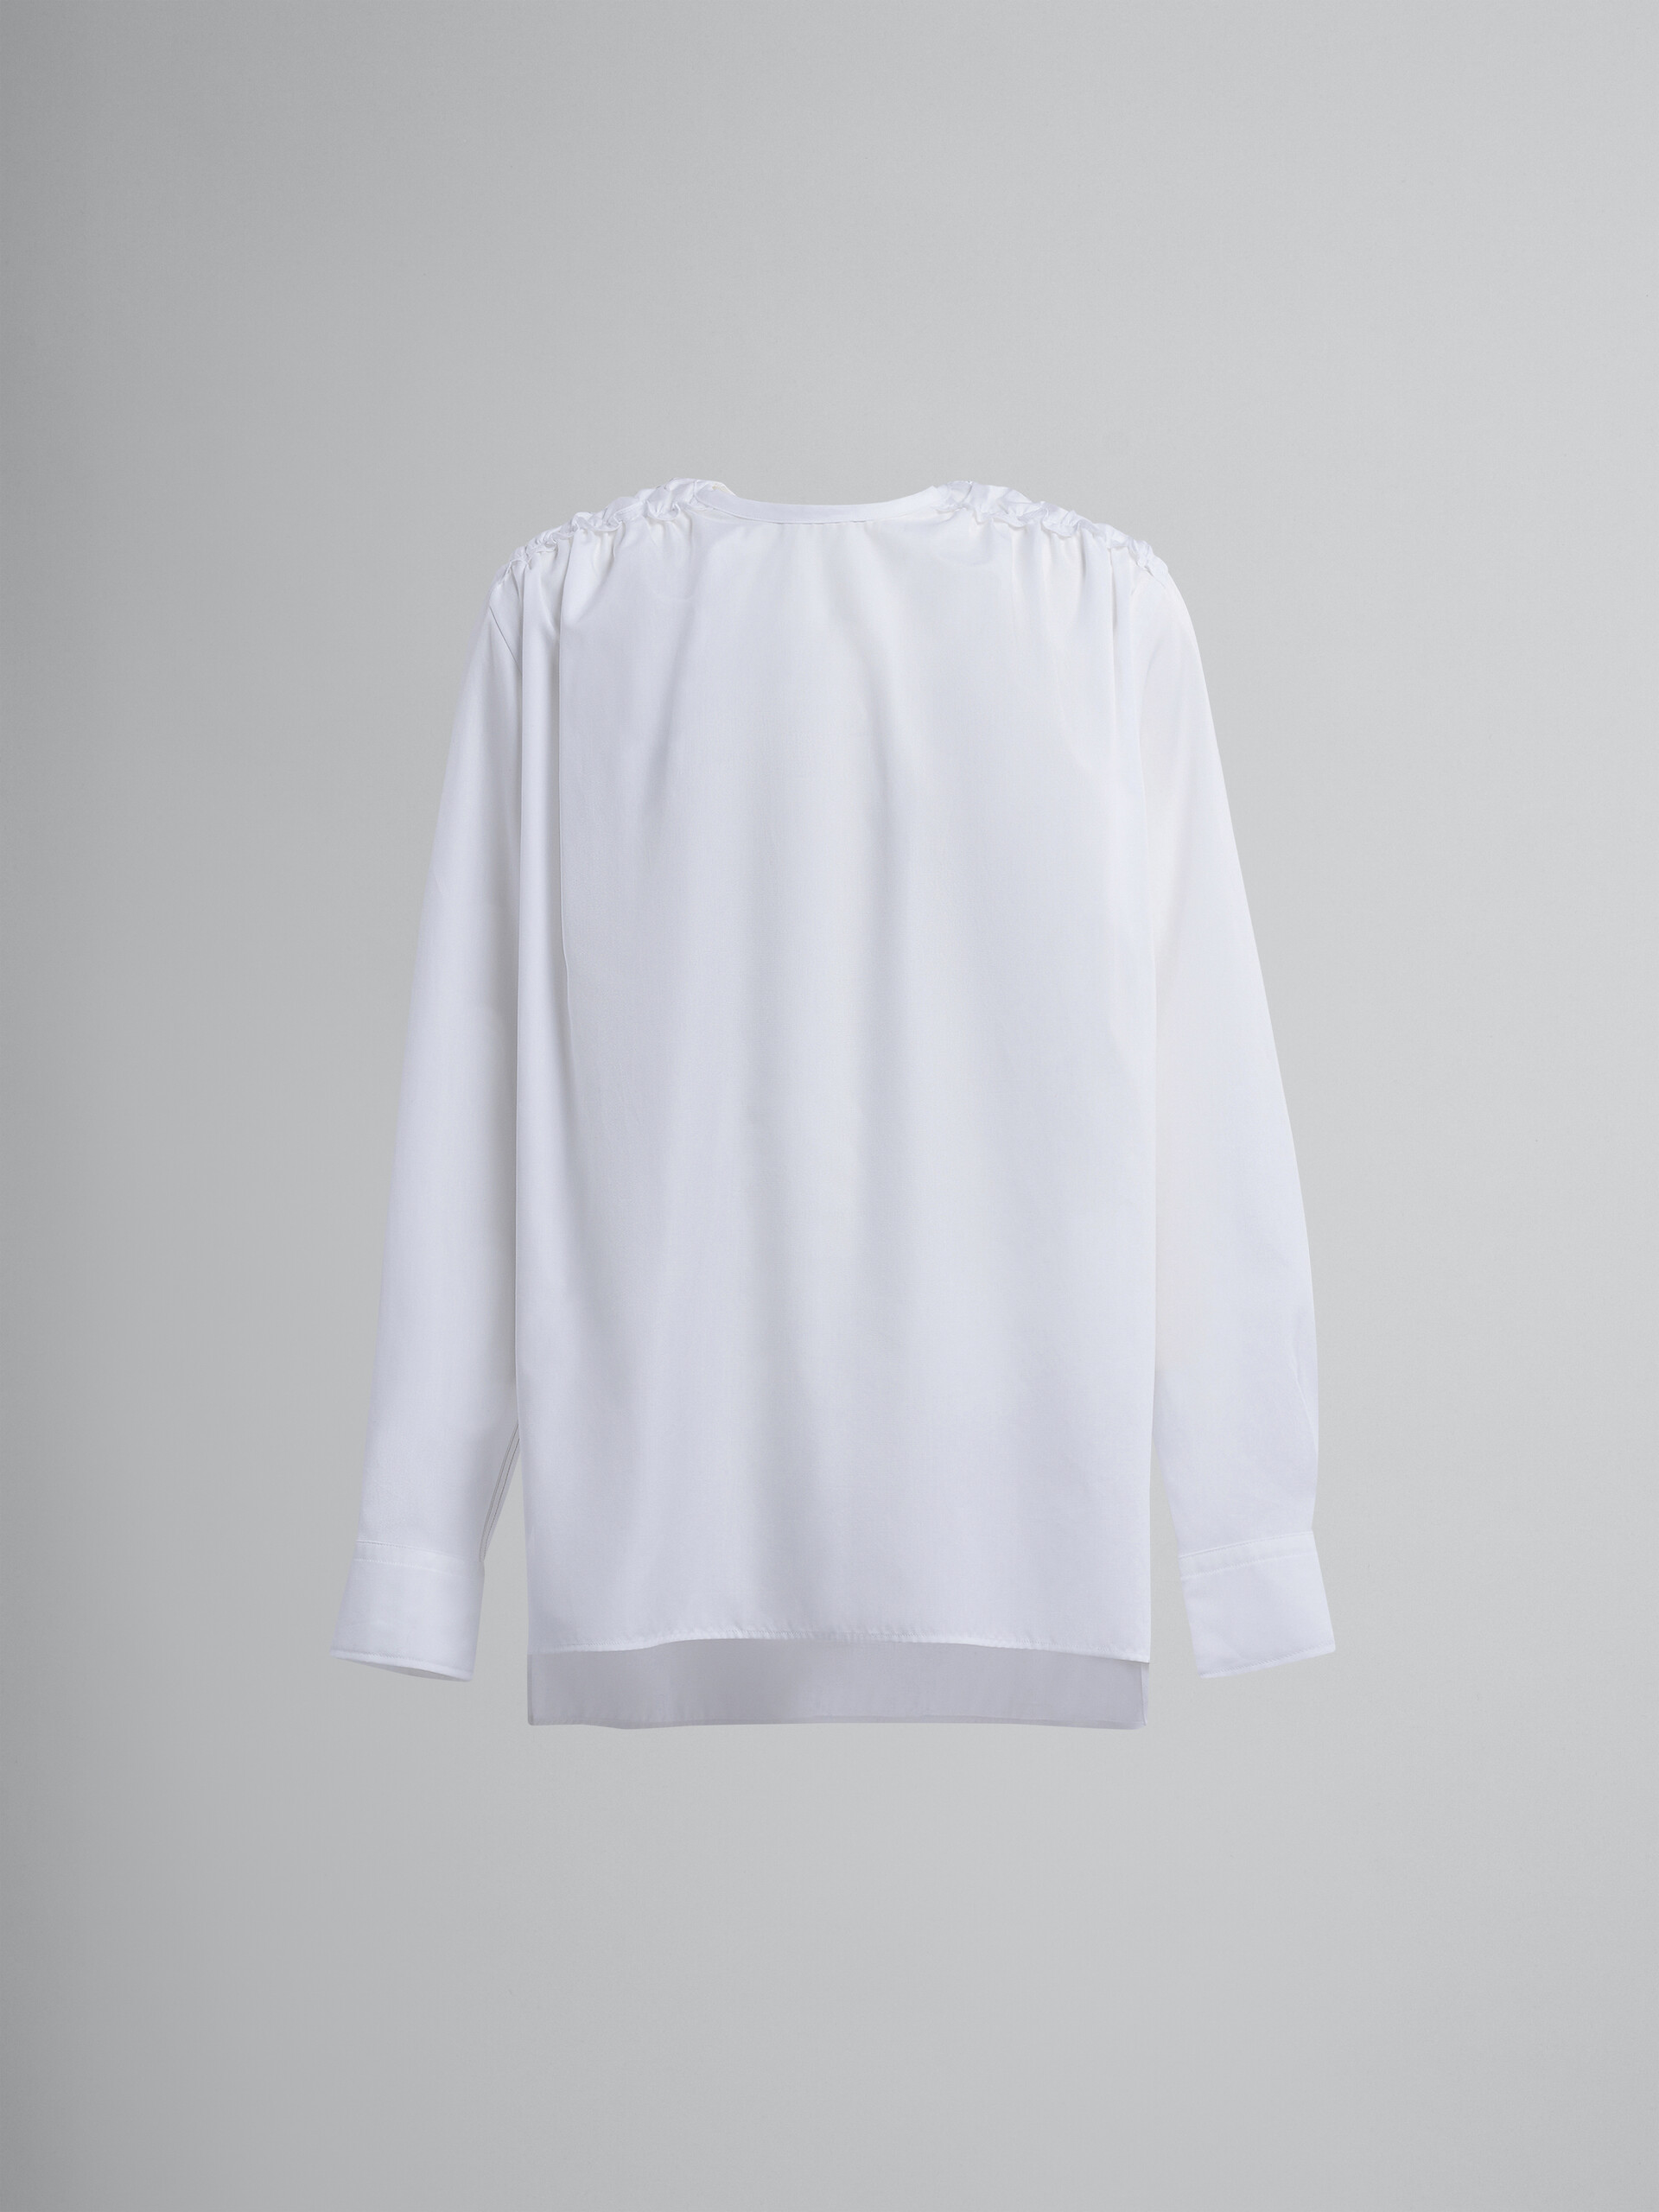 Camisa de popelina de algodón blanca - Camisas - Image 1